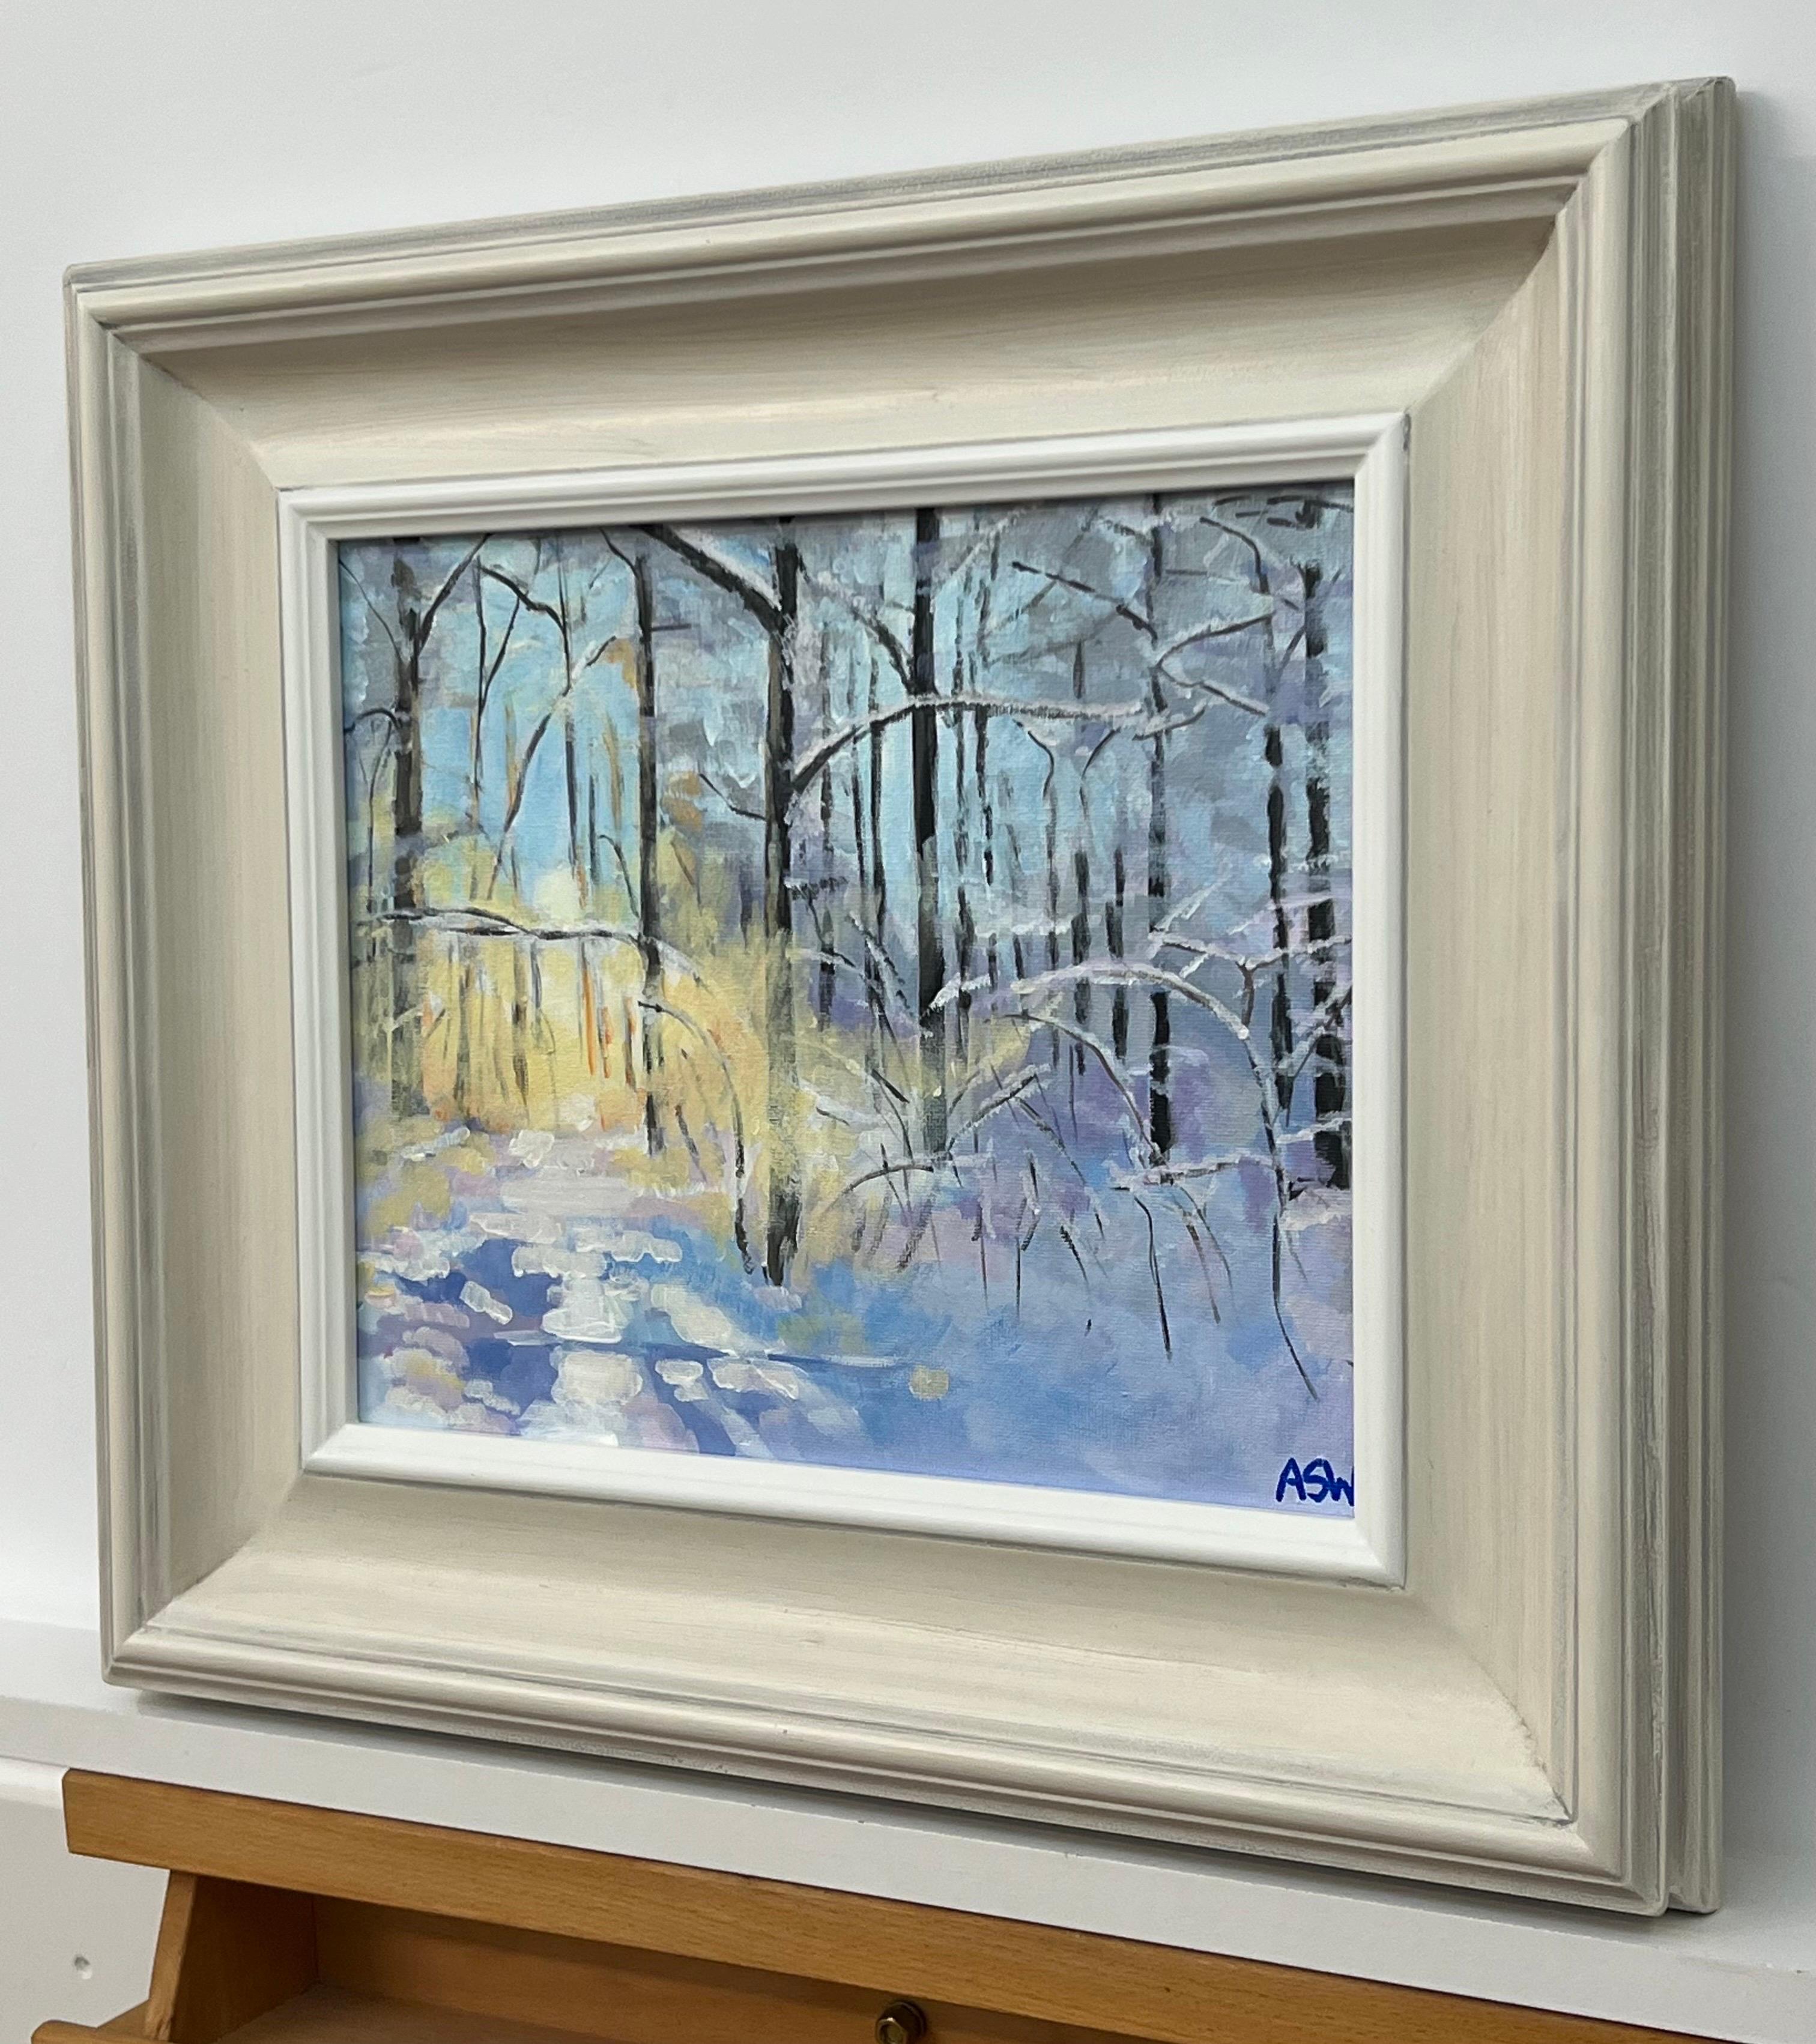 Peinture impressionniste d'un paysage de neige hivernale dans une forêt de Zurich, en Suisse, réalisée par Angela Wakefield, artiste britannique contemporaine de premier plan. 

L'œuvre d'art mesure 12 x 10 pouces 
Le cadre mesure 18 x 16 pouces